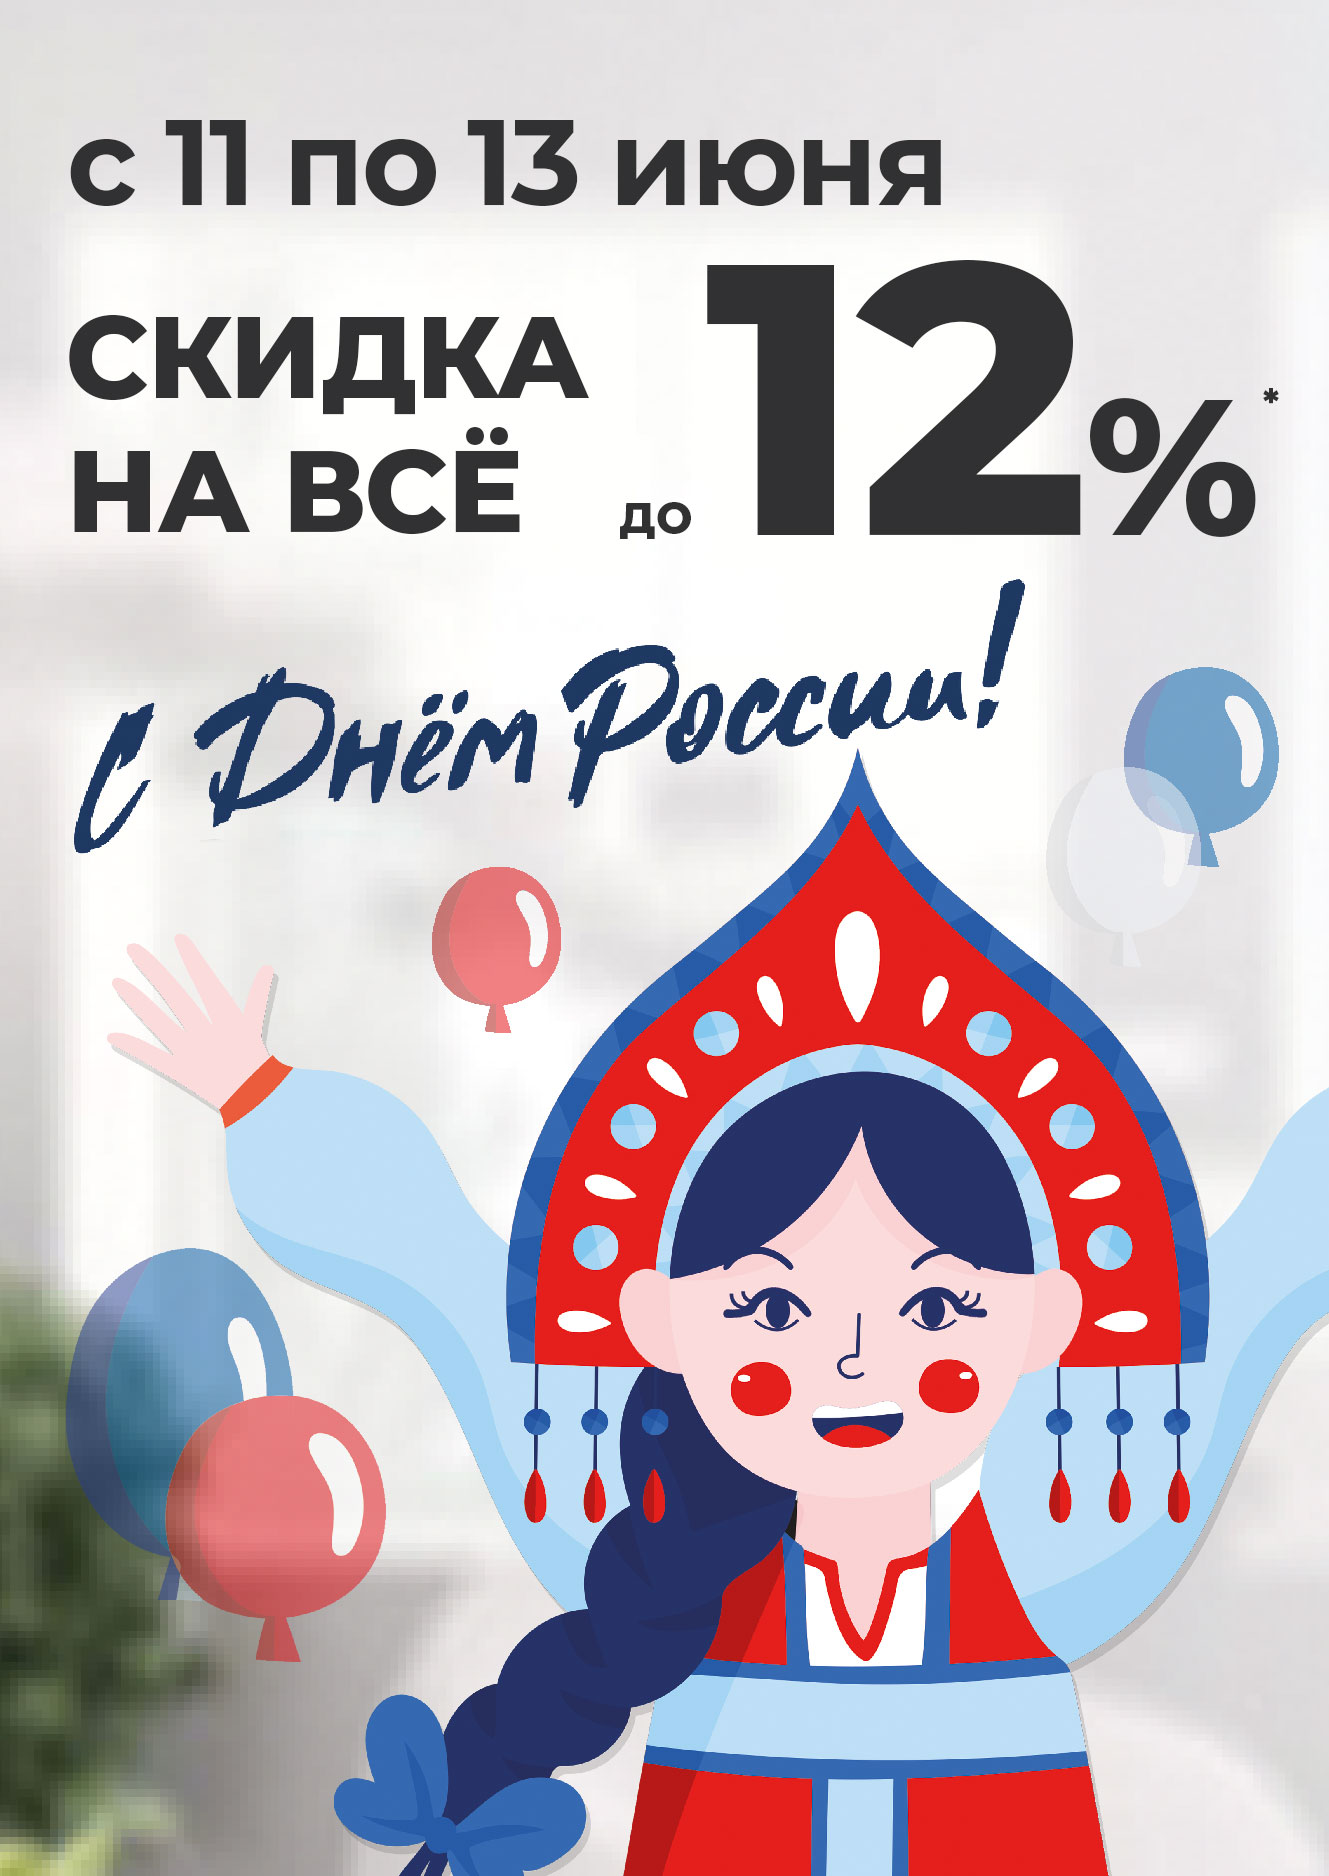 День России! Скидка на все до 13%* с 11 по 13 июня 2022 г.